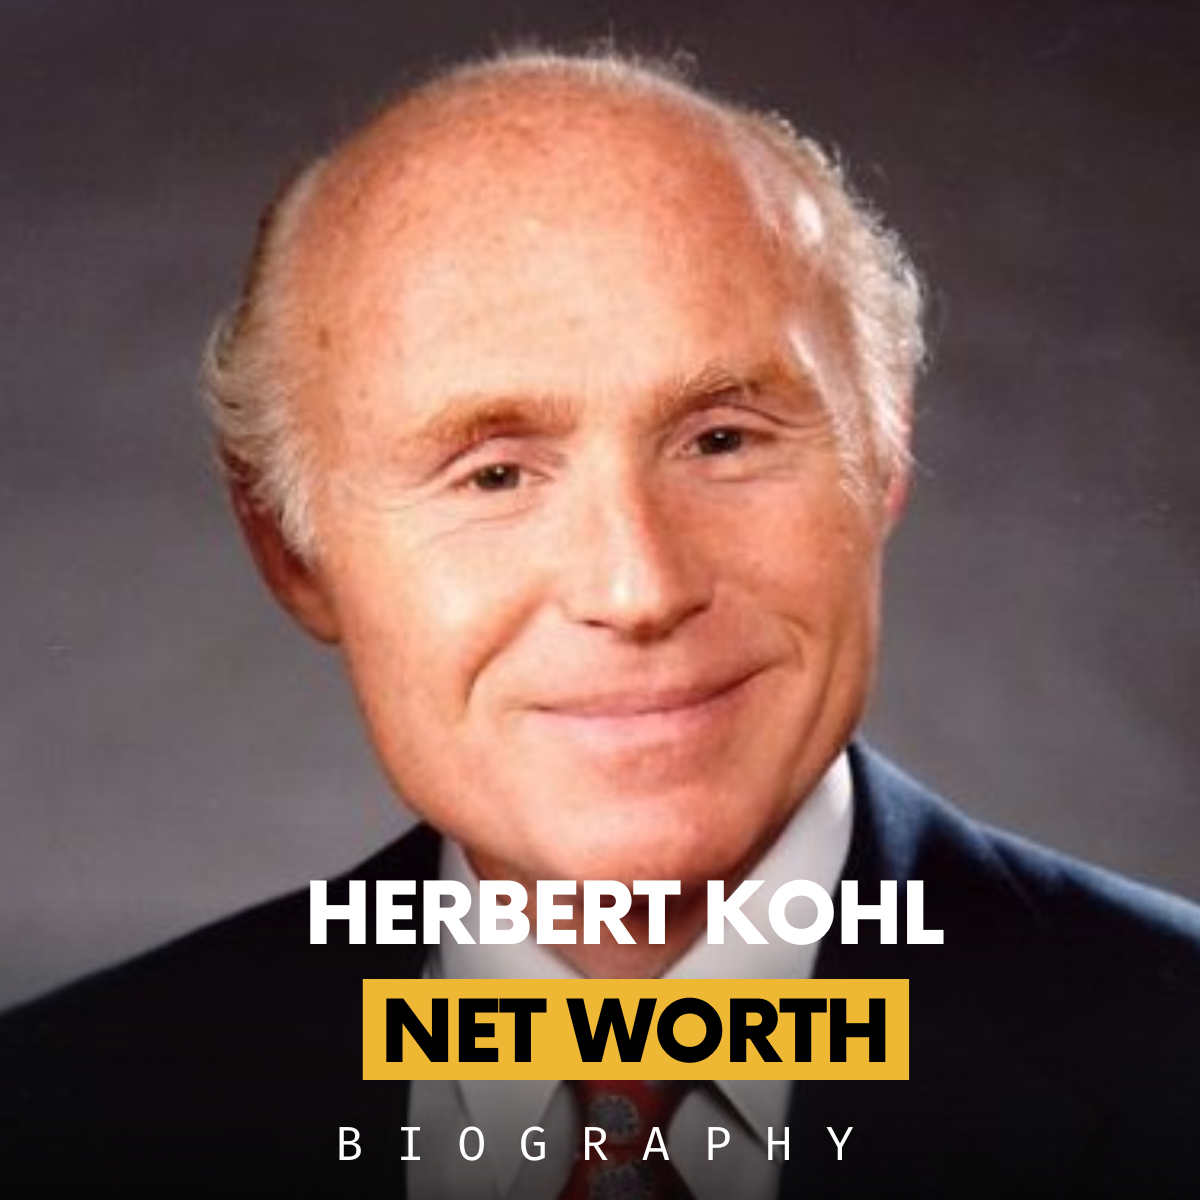 Herbert Kohl net worth